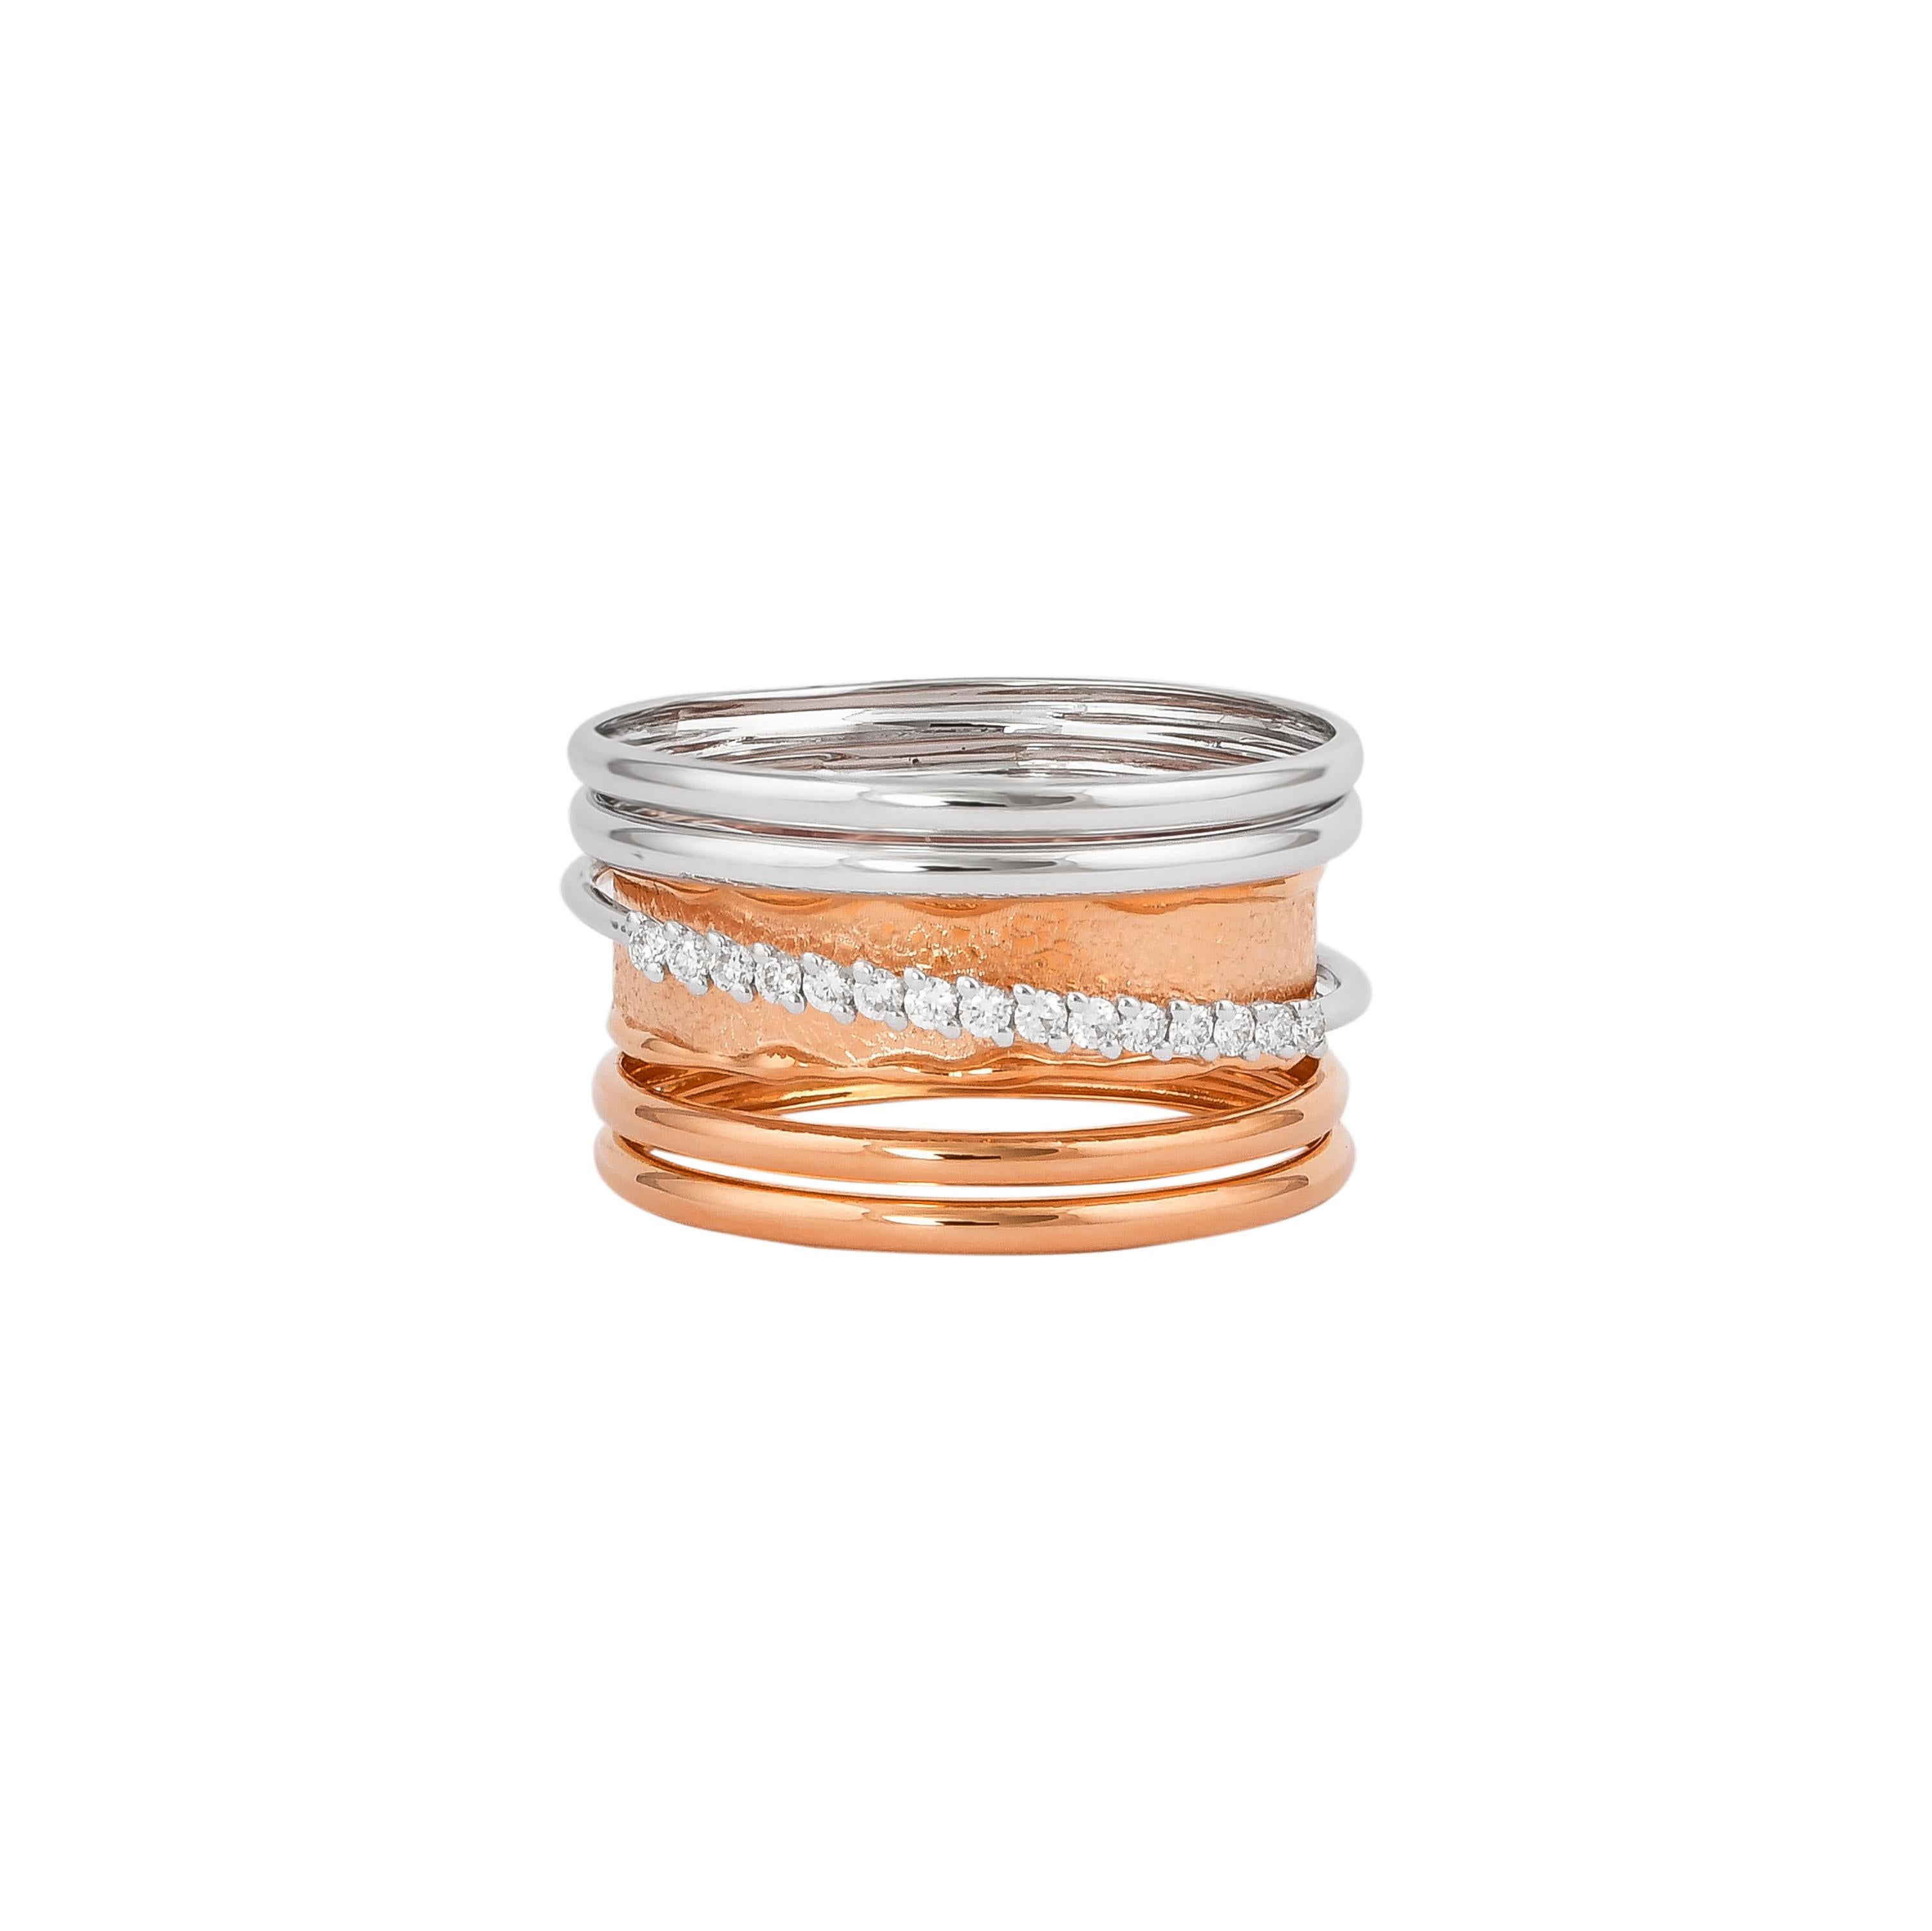 Round Cut 0.15 Carat Diamond Ring in 18 Karat White & Rose Gold For Sale